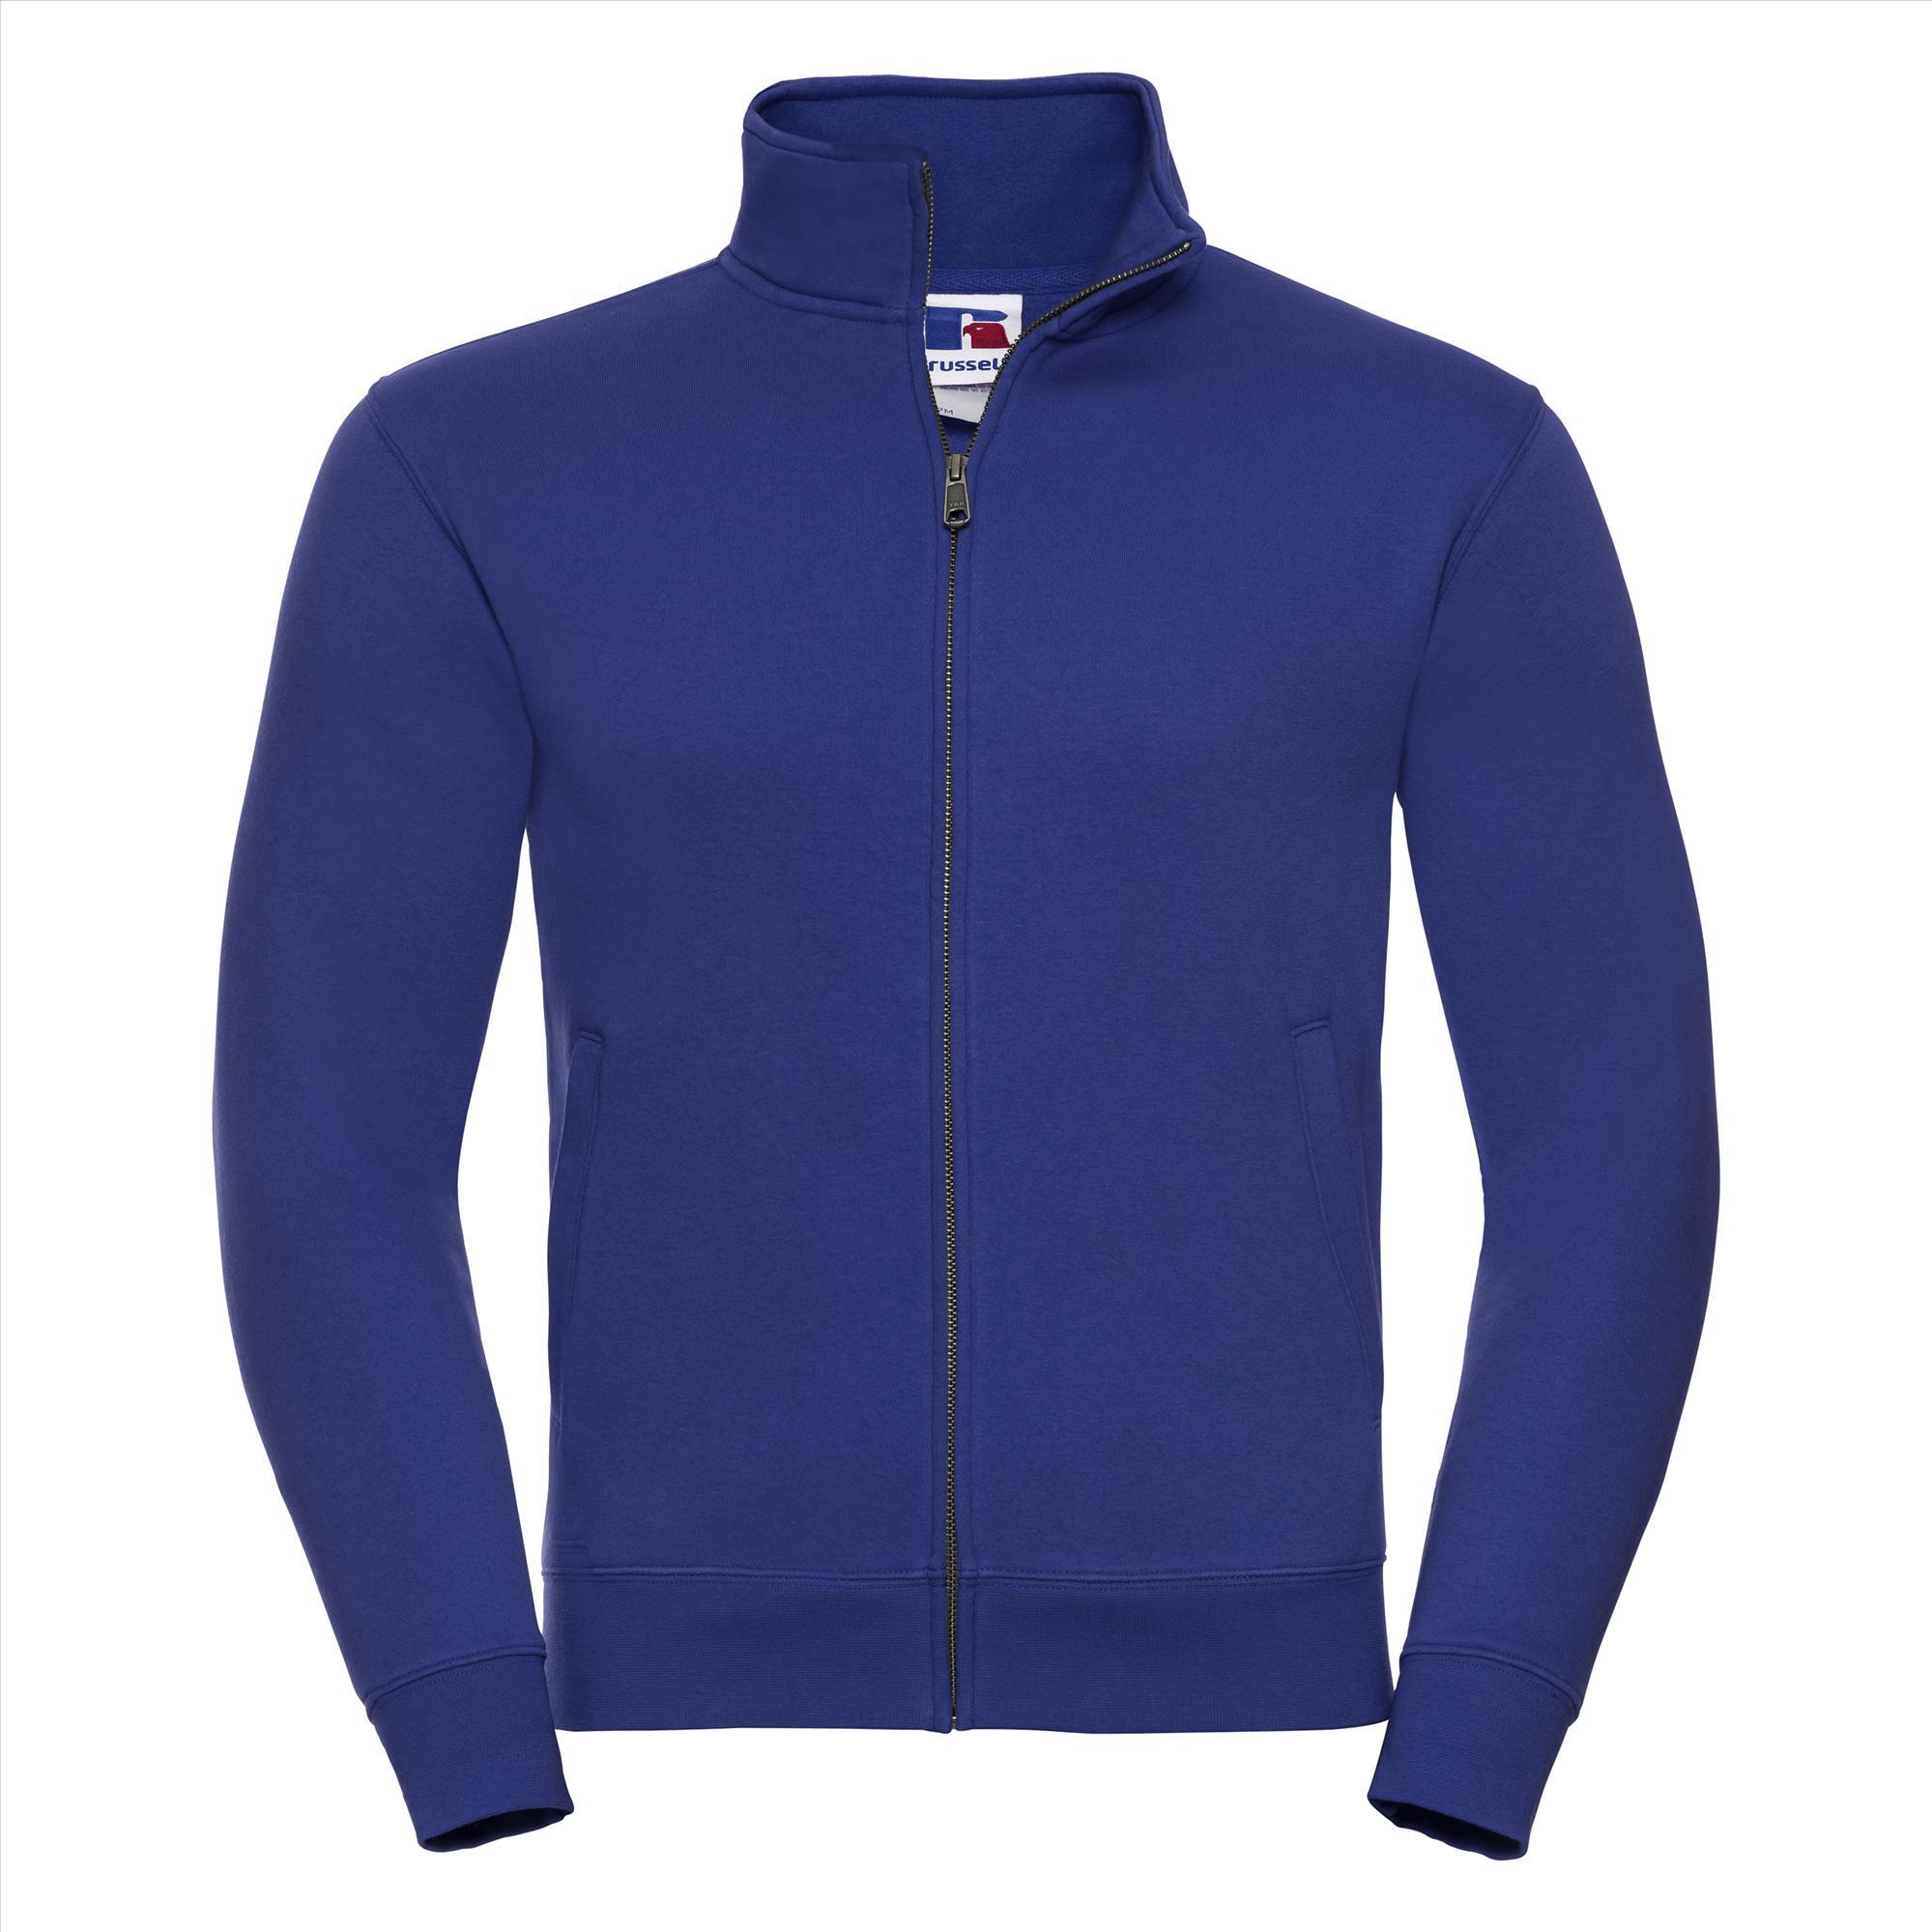 Sweatjacket royal blauw voor mannen perfect voor persoonlijke bedrukking personaliseren